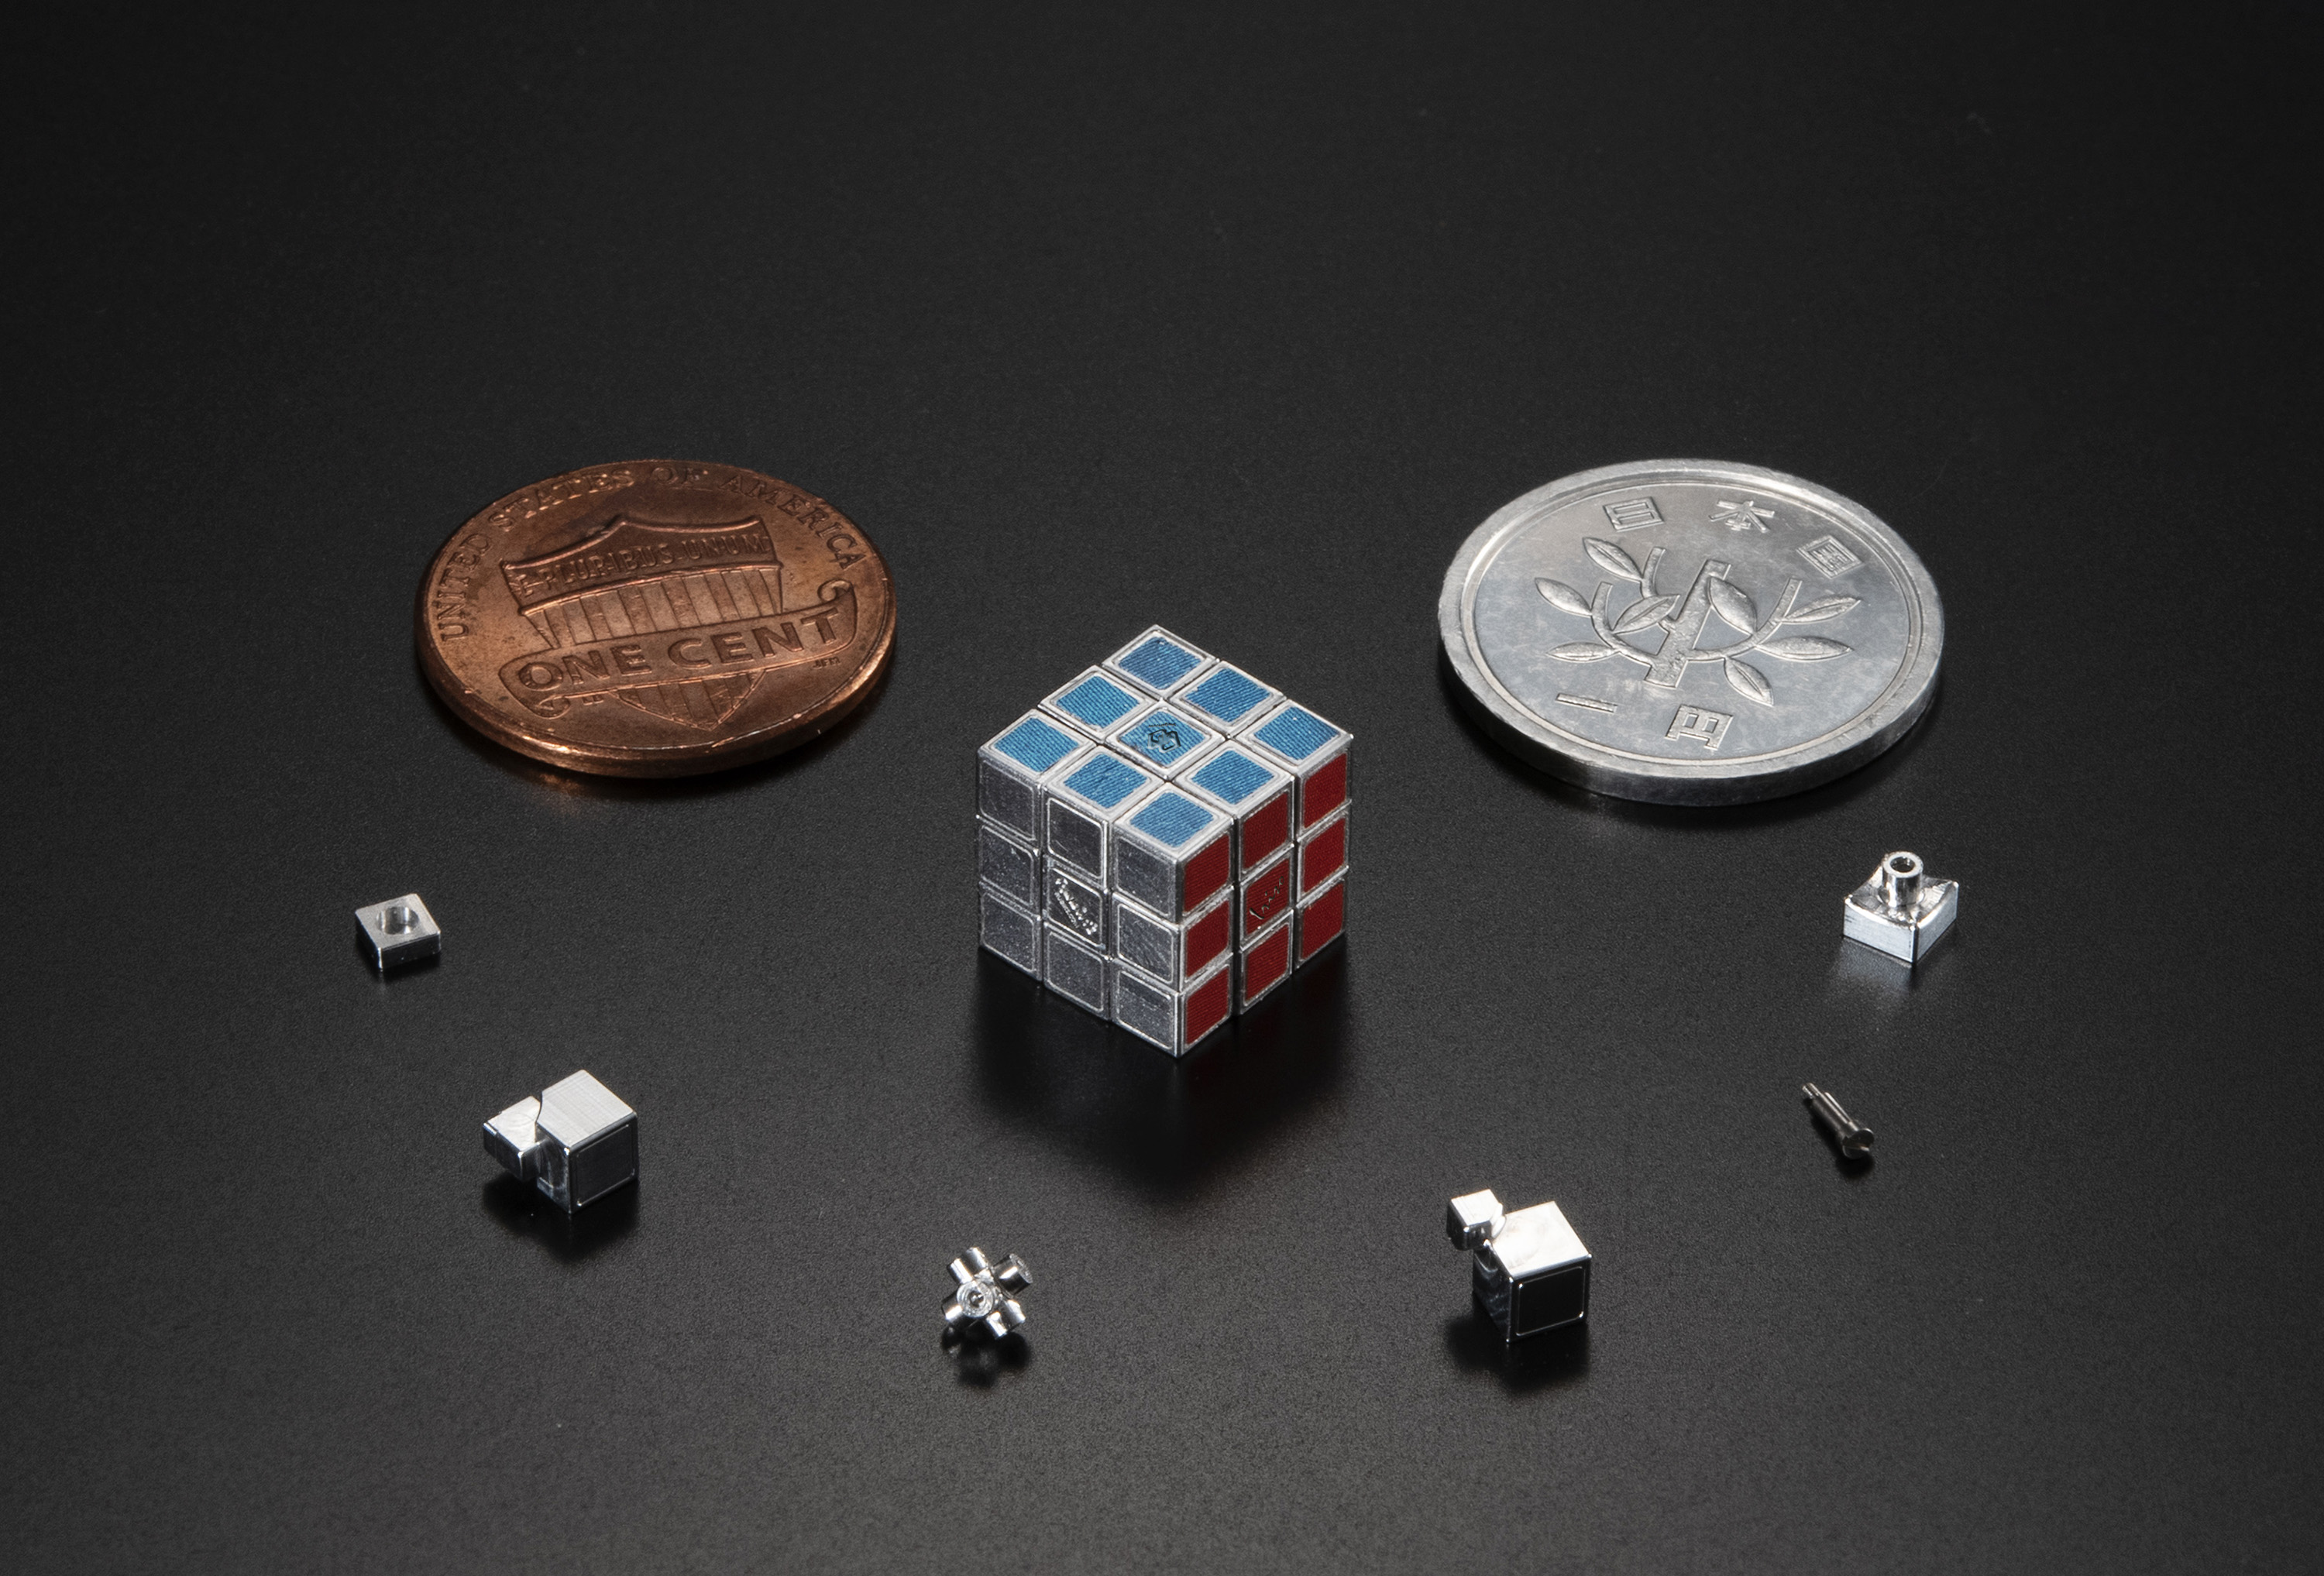 メガハウスより、日本の精密加工技術で作られた「世界最小の金属製ルービックキューブ」が発売決定。世界展開40周年記念のファンアイテム_001